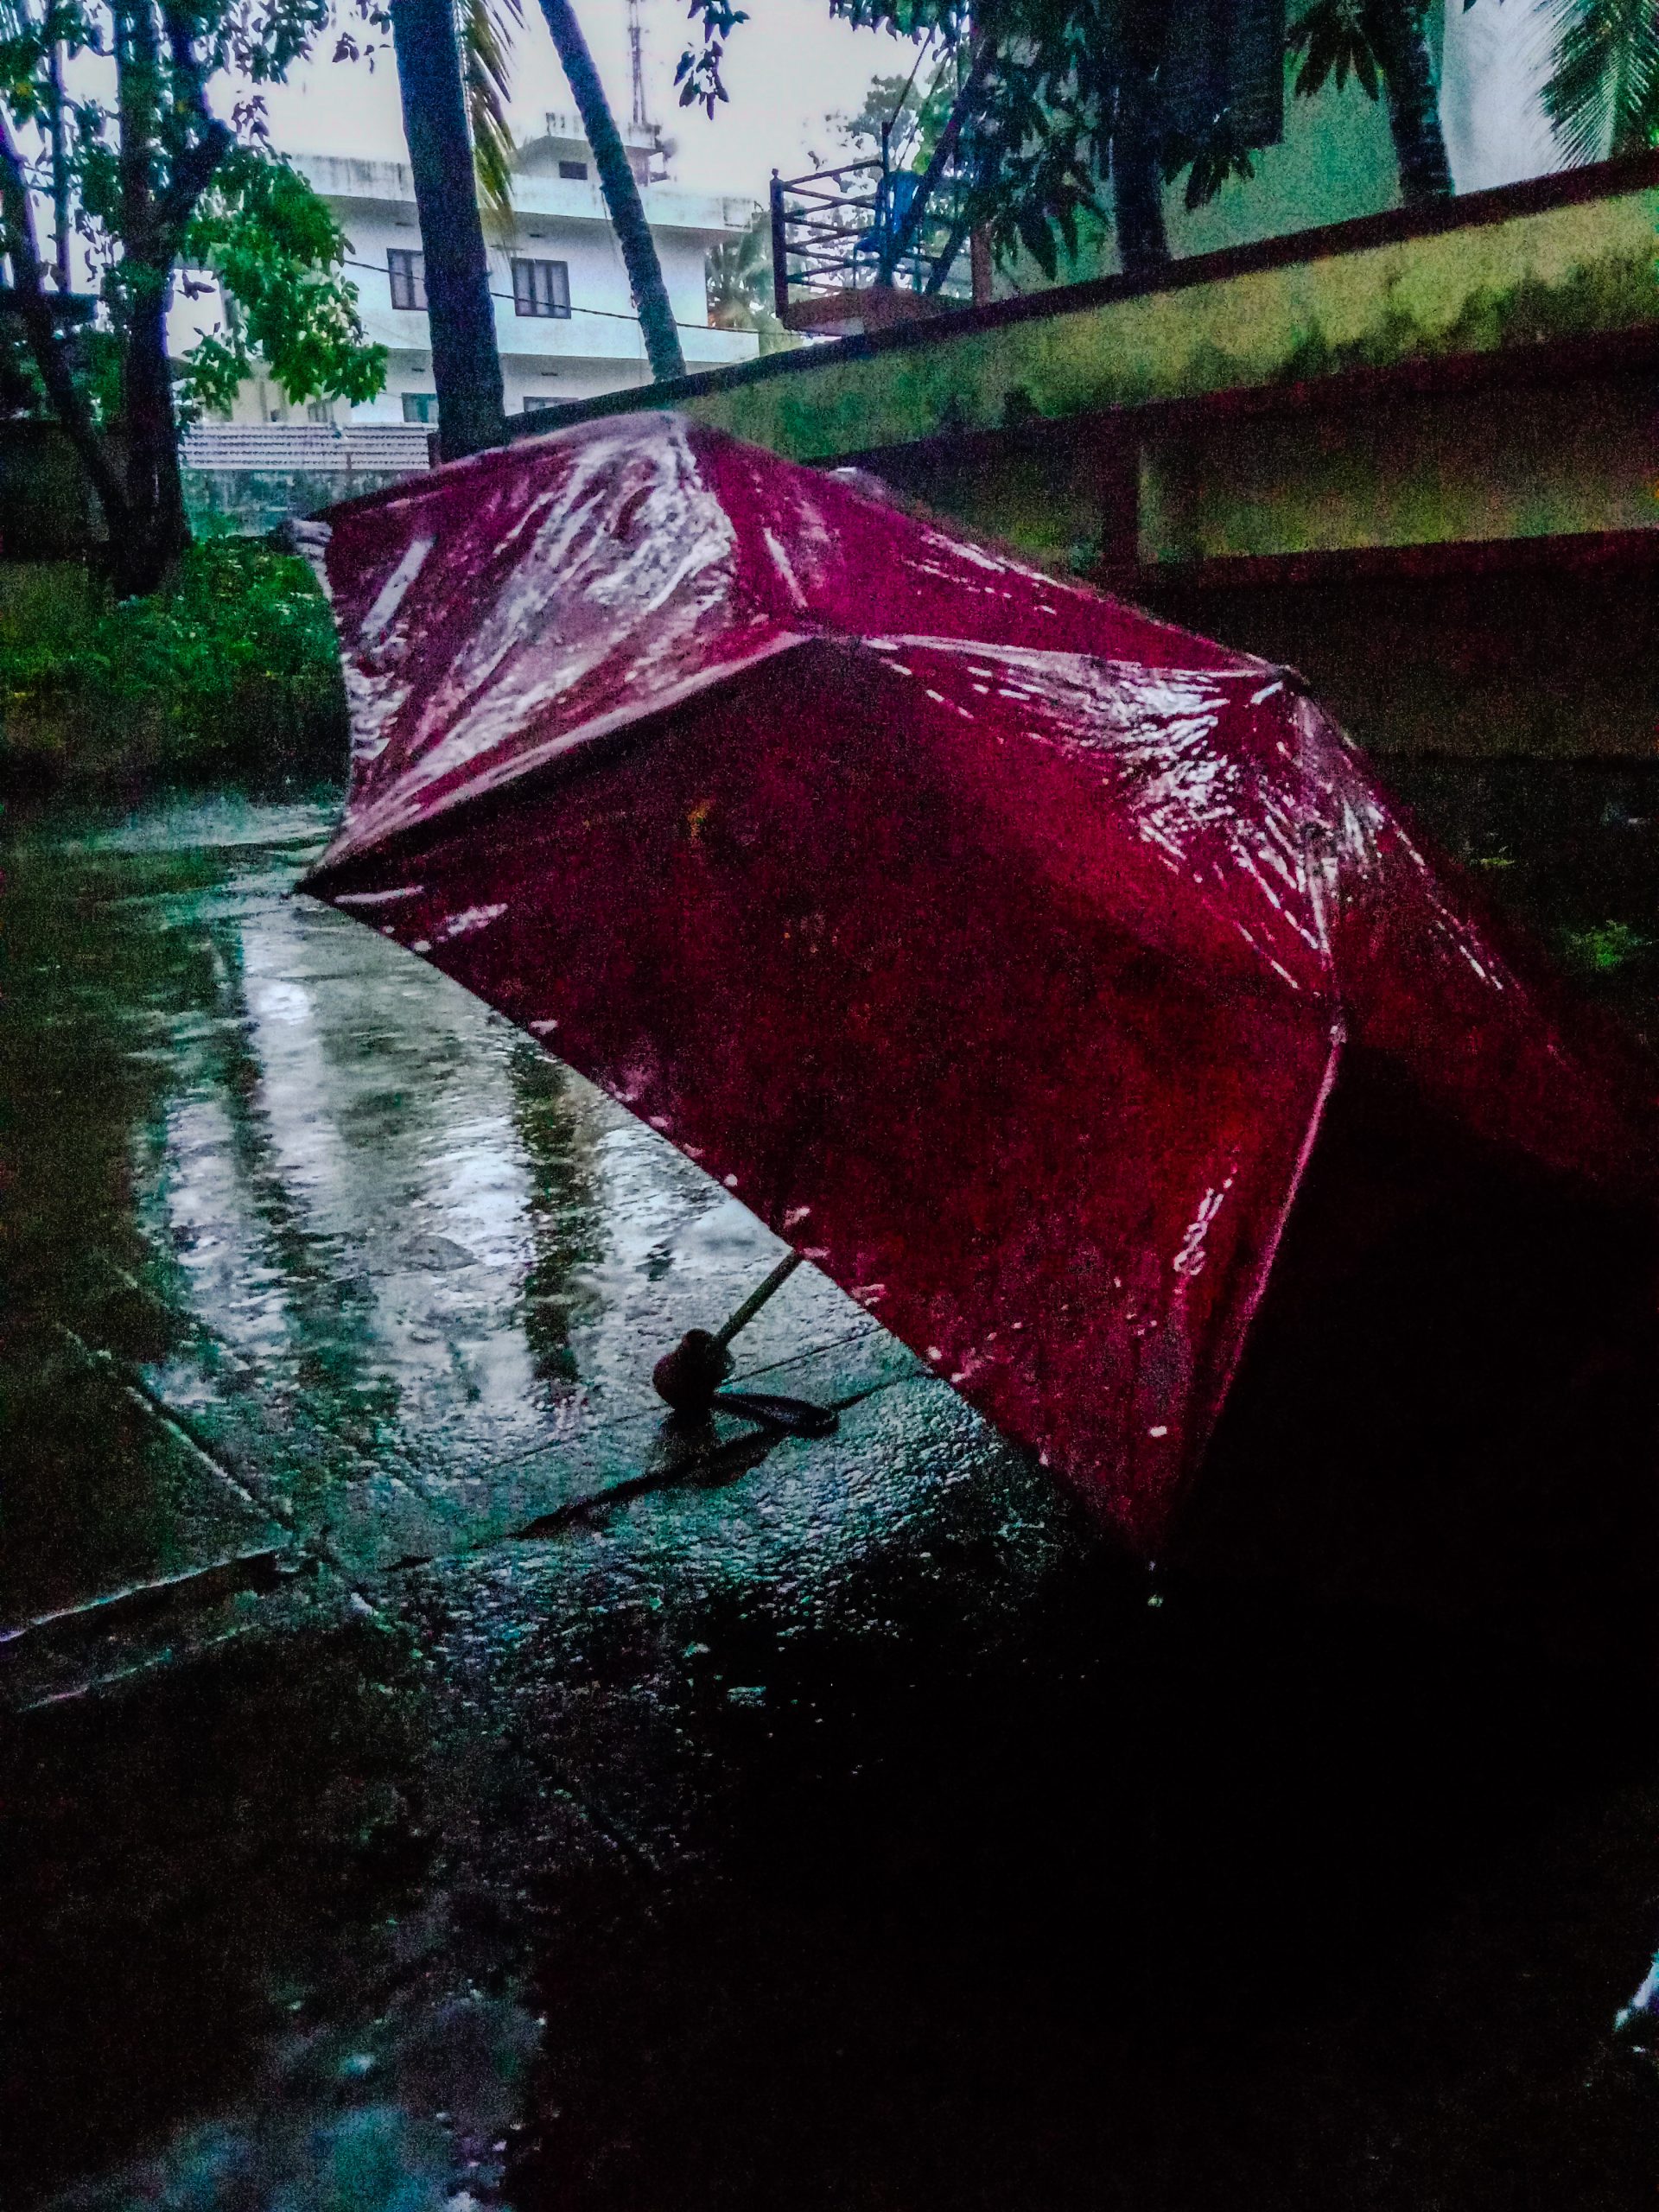 Umbrella in a heavy rain